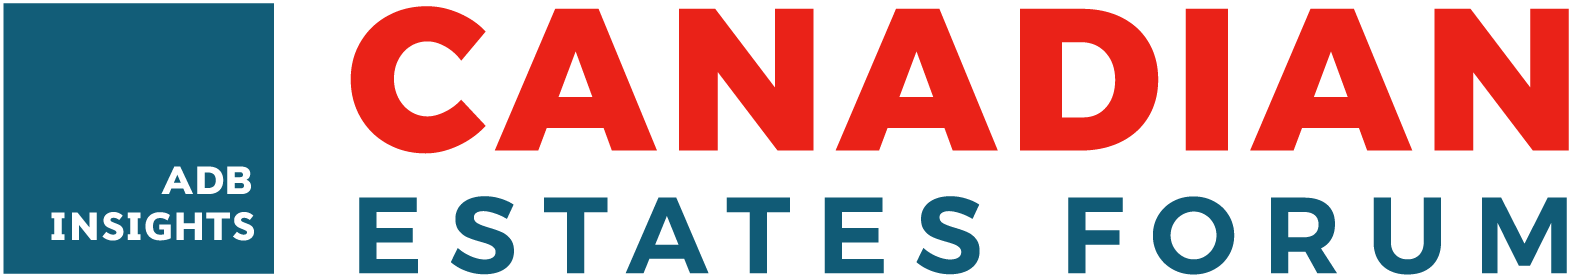 Canadian Estates Forum